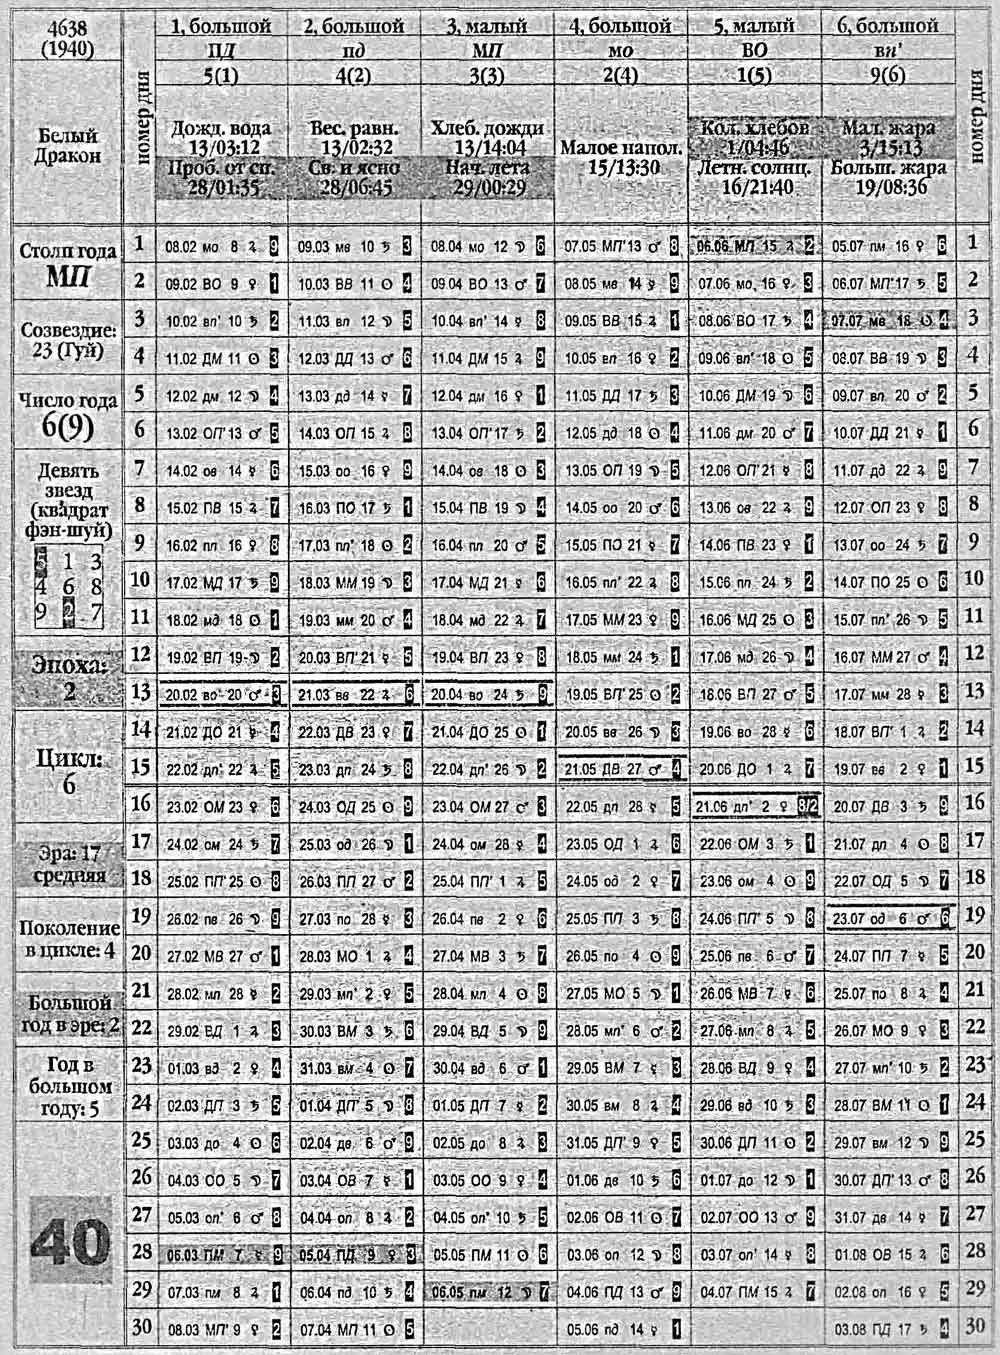 Китайский календарь 1940 года